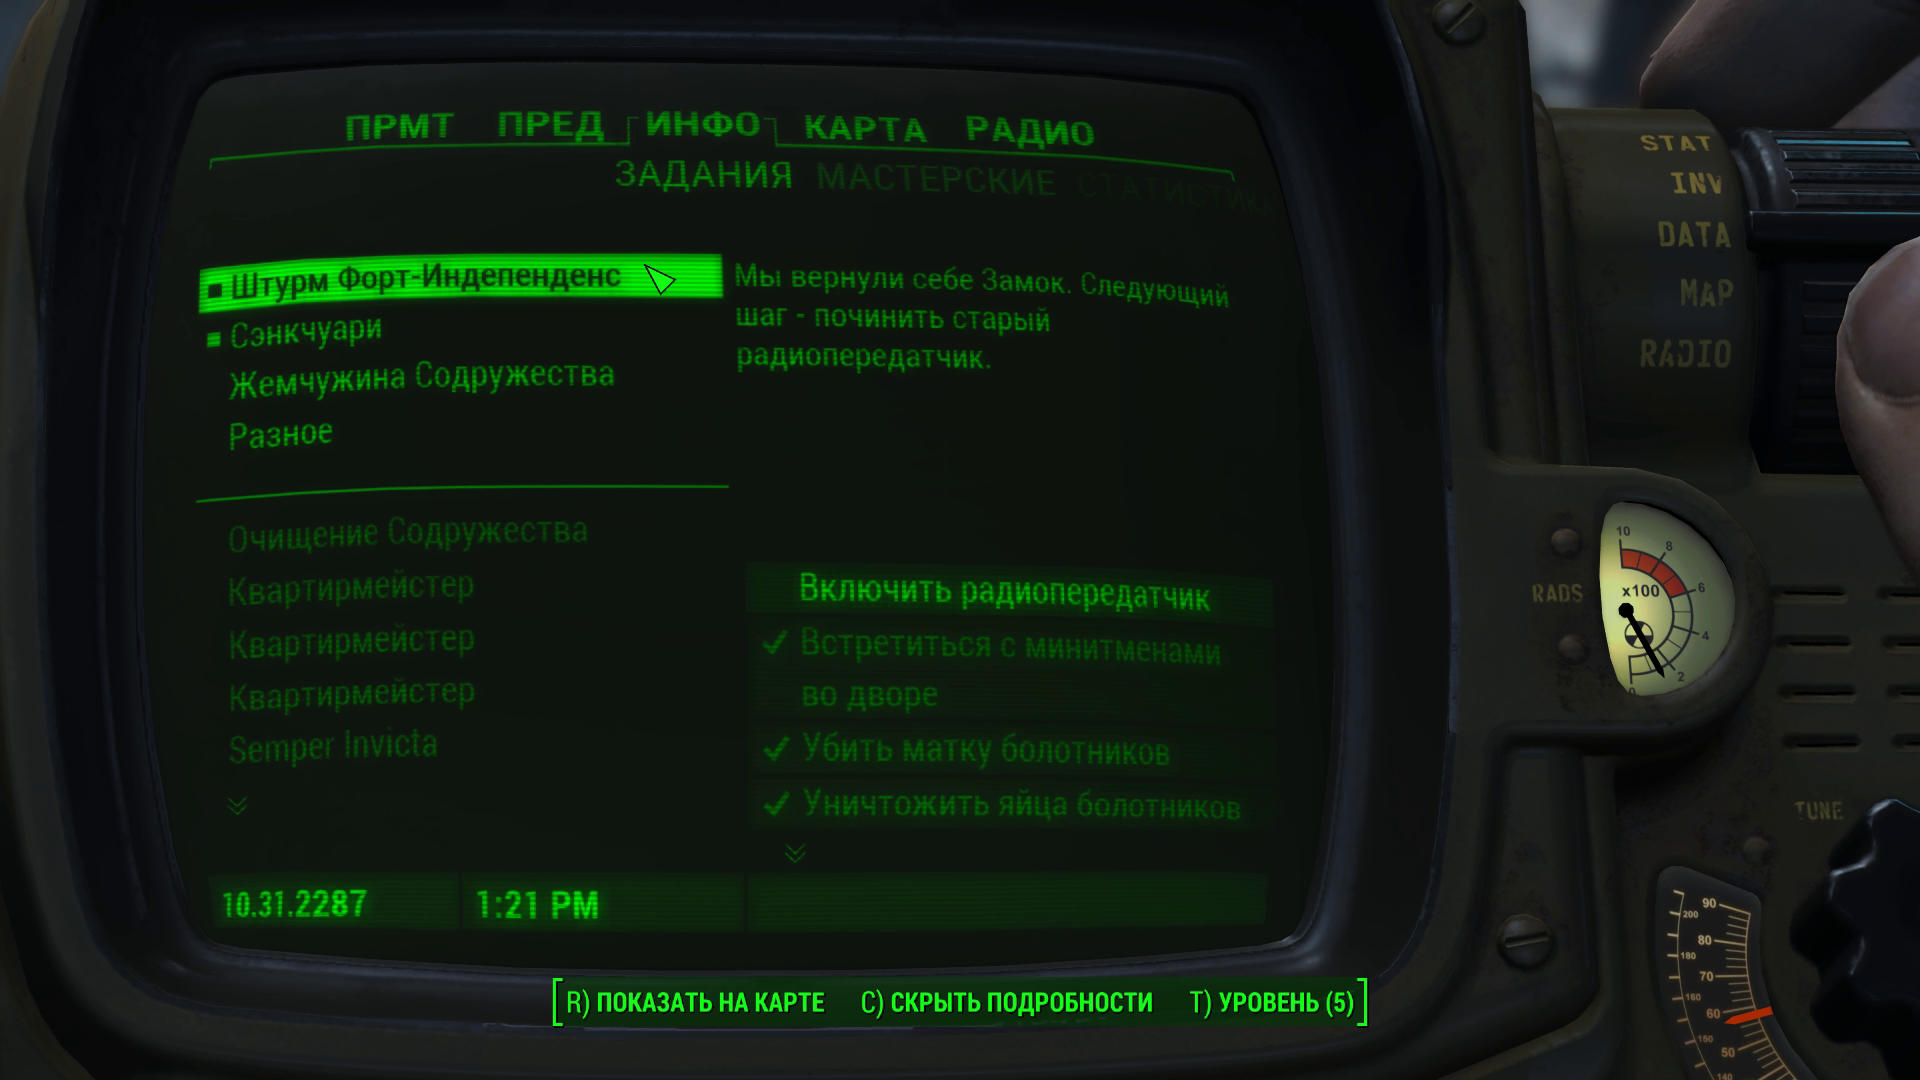 Fallout 4 штурм форт индепенденс радиопередатчик фото 2